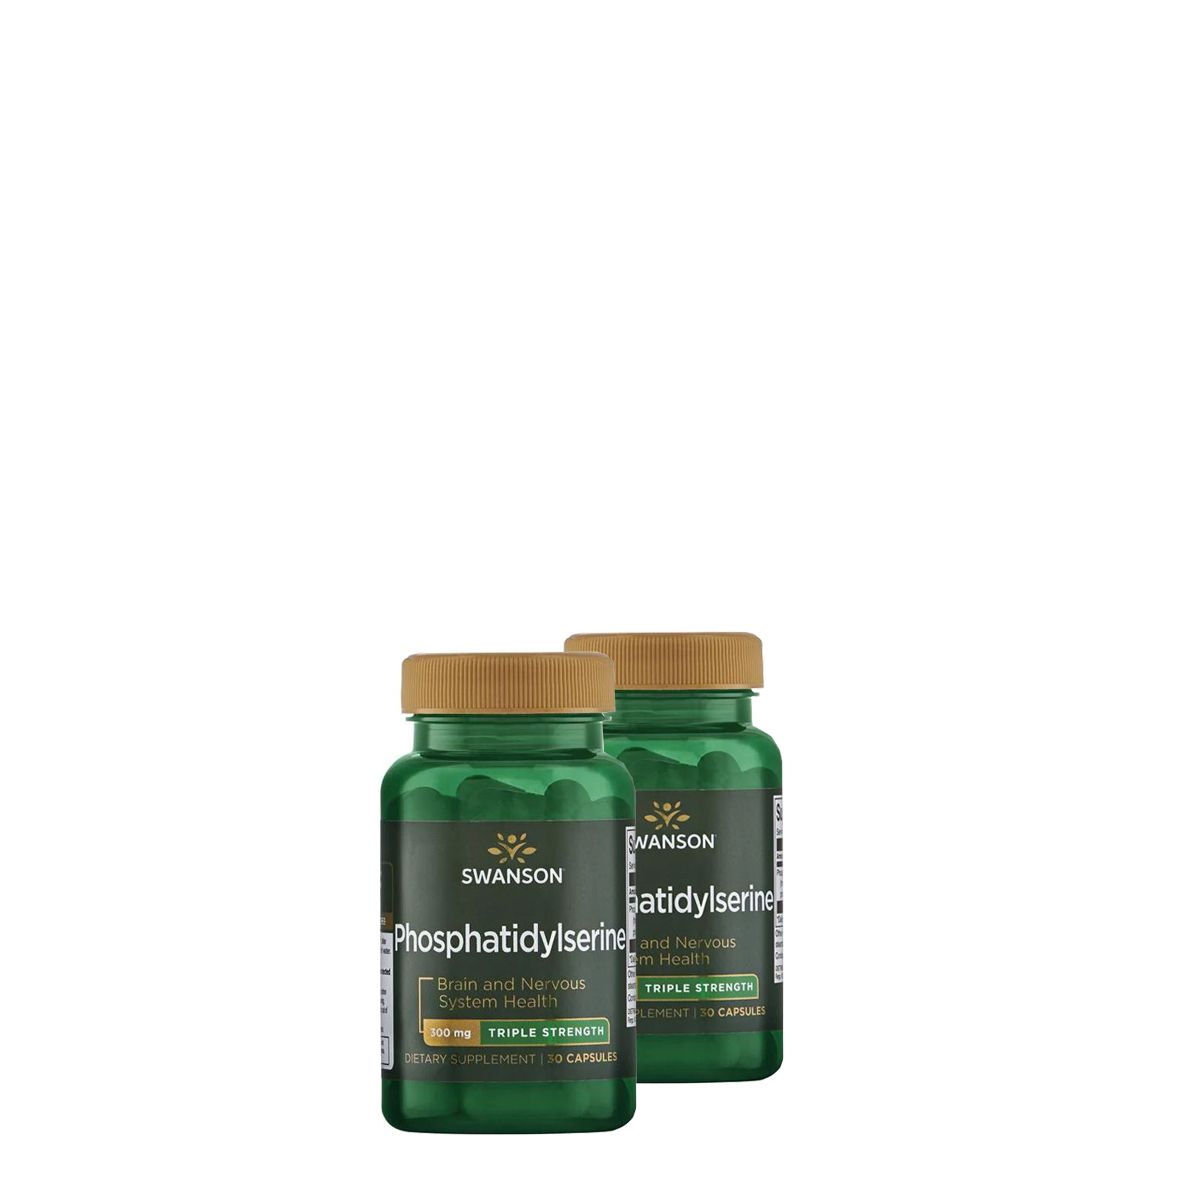 Foszfatidilszerin 300 mg, Swanson Phosphatidylserine, 2x30 gélkapszula